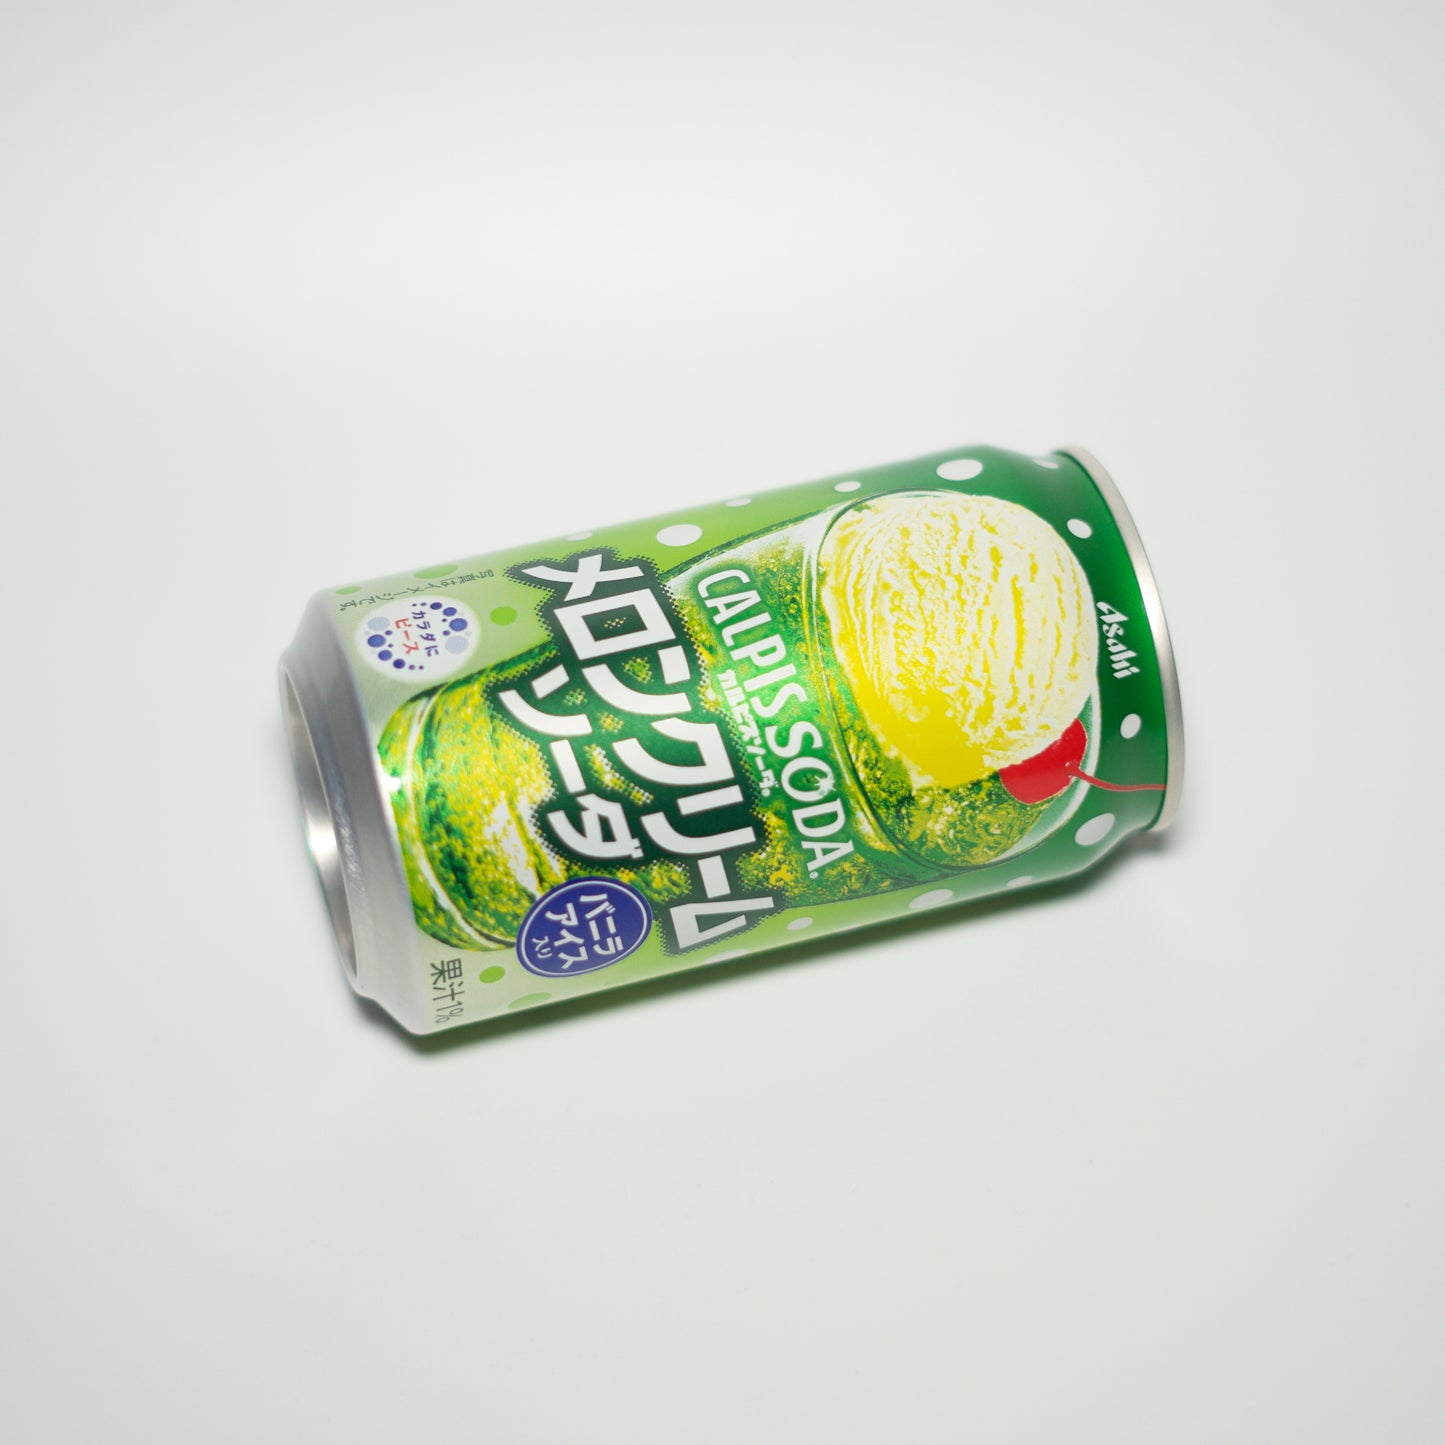 Asahi Calpis Melon Cream Soda Can 350ml